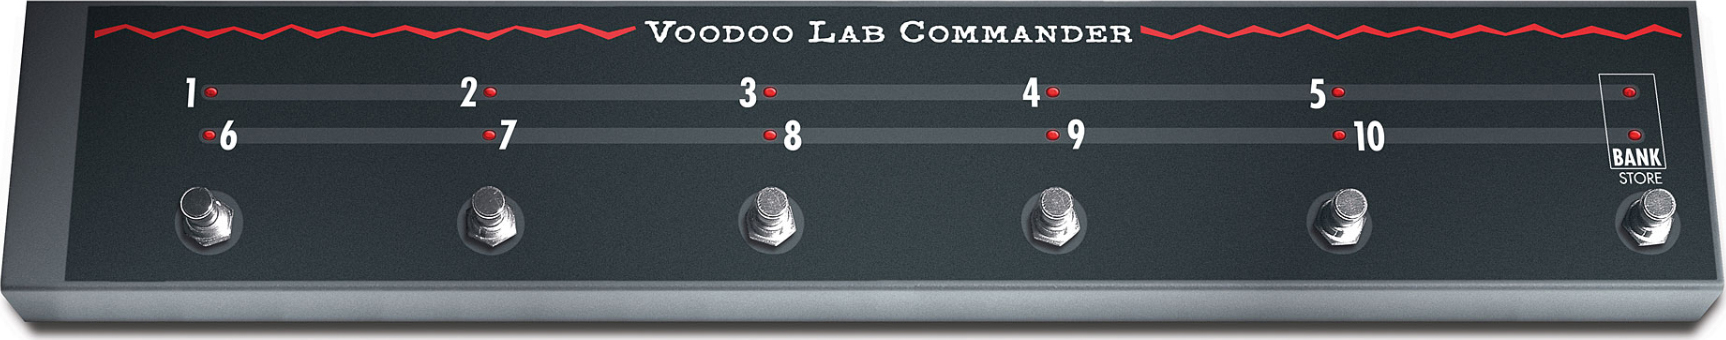 Voodoo Lab Commander Effects & Amp Switching System - Voetschakelaar & anderen - Main picture